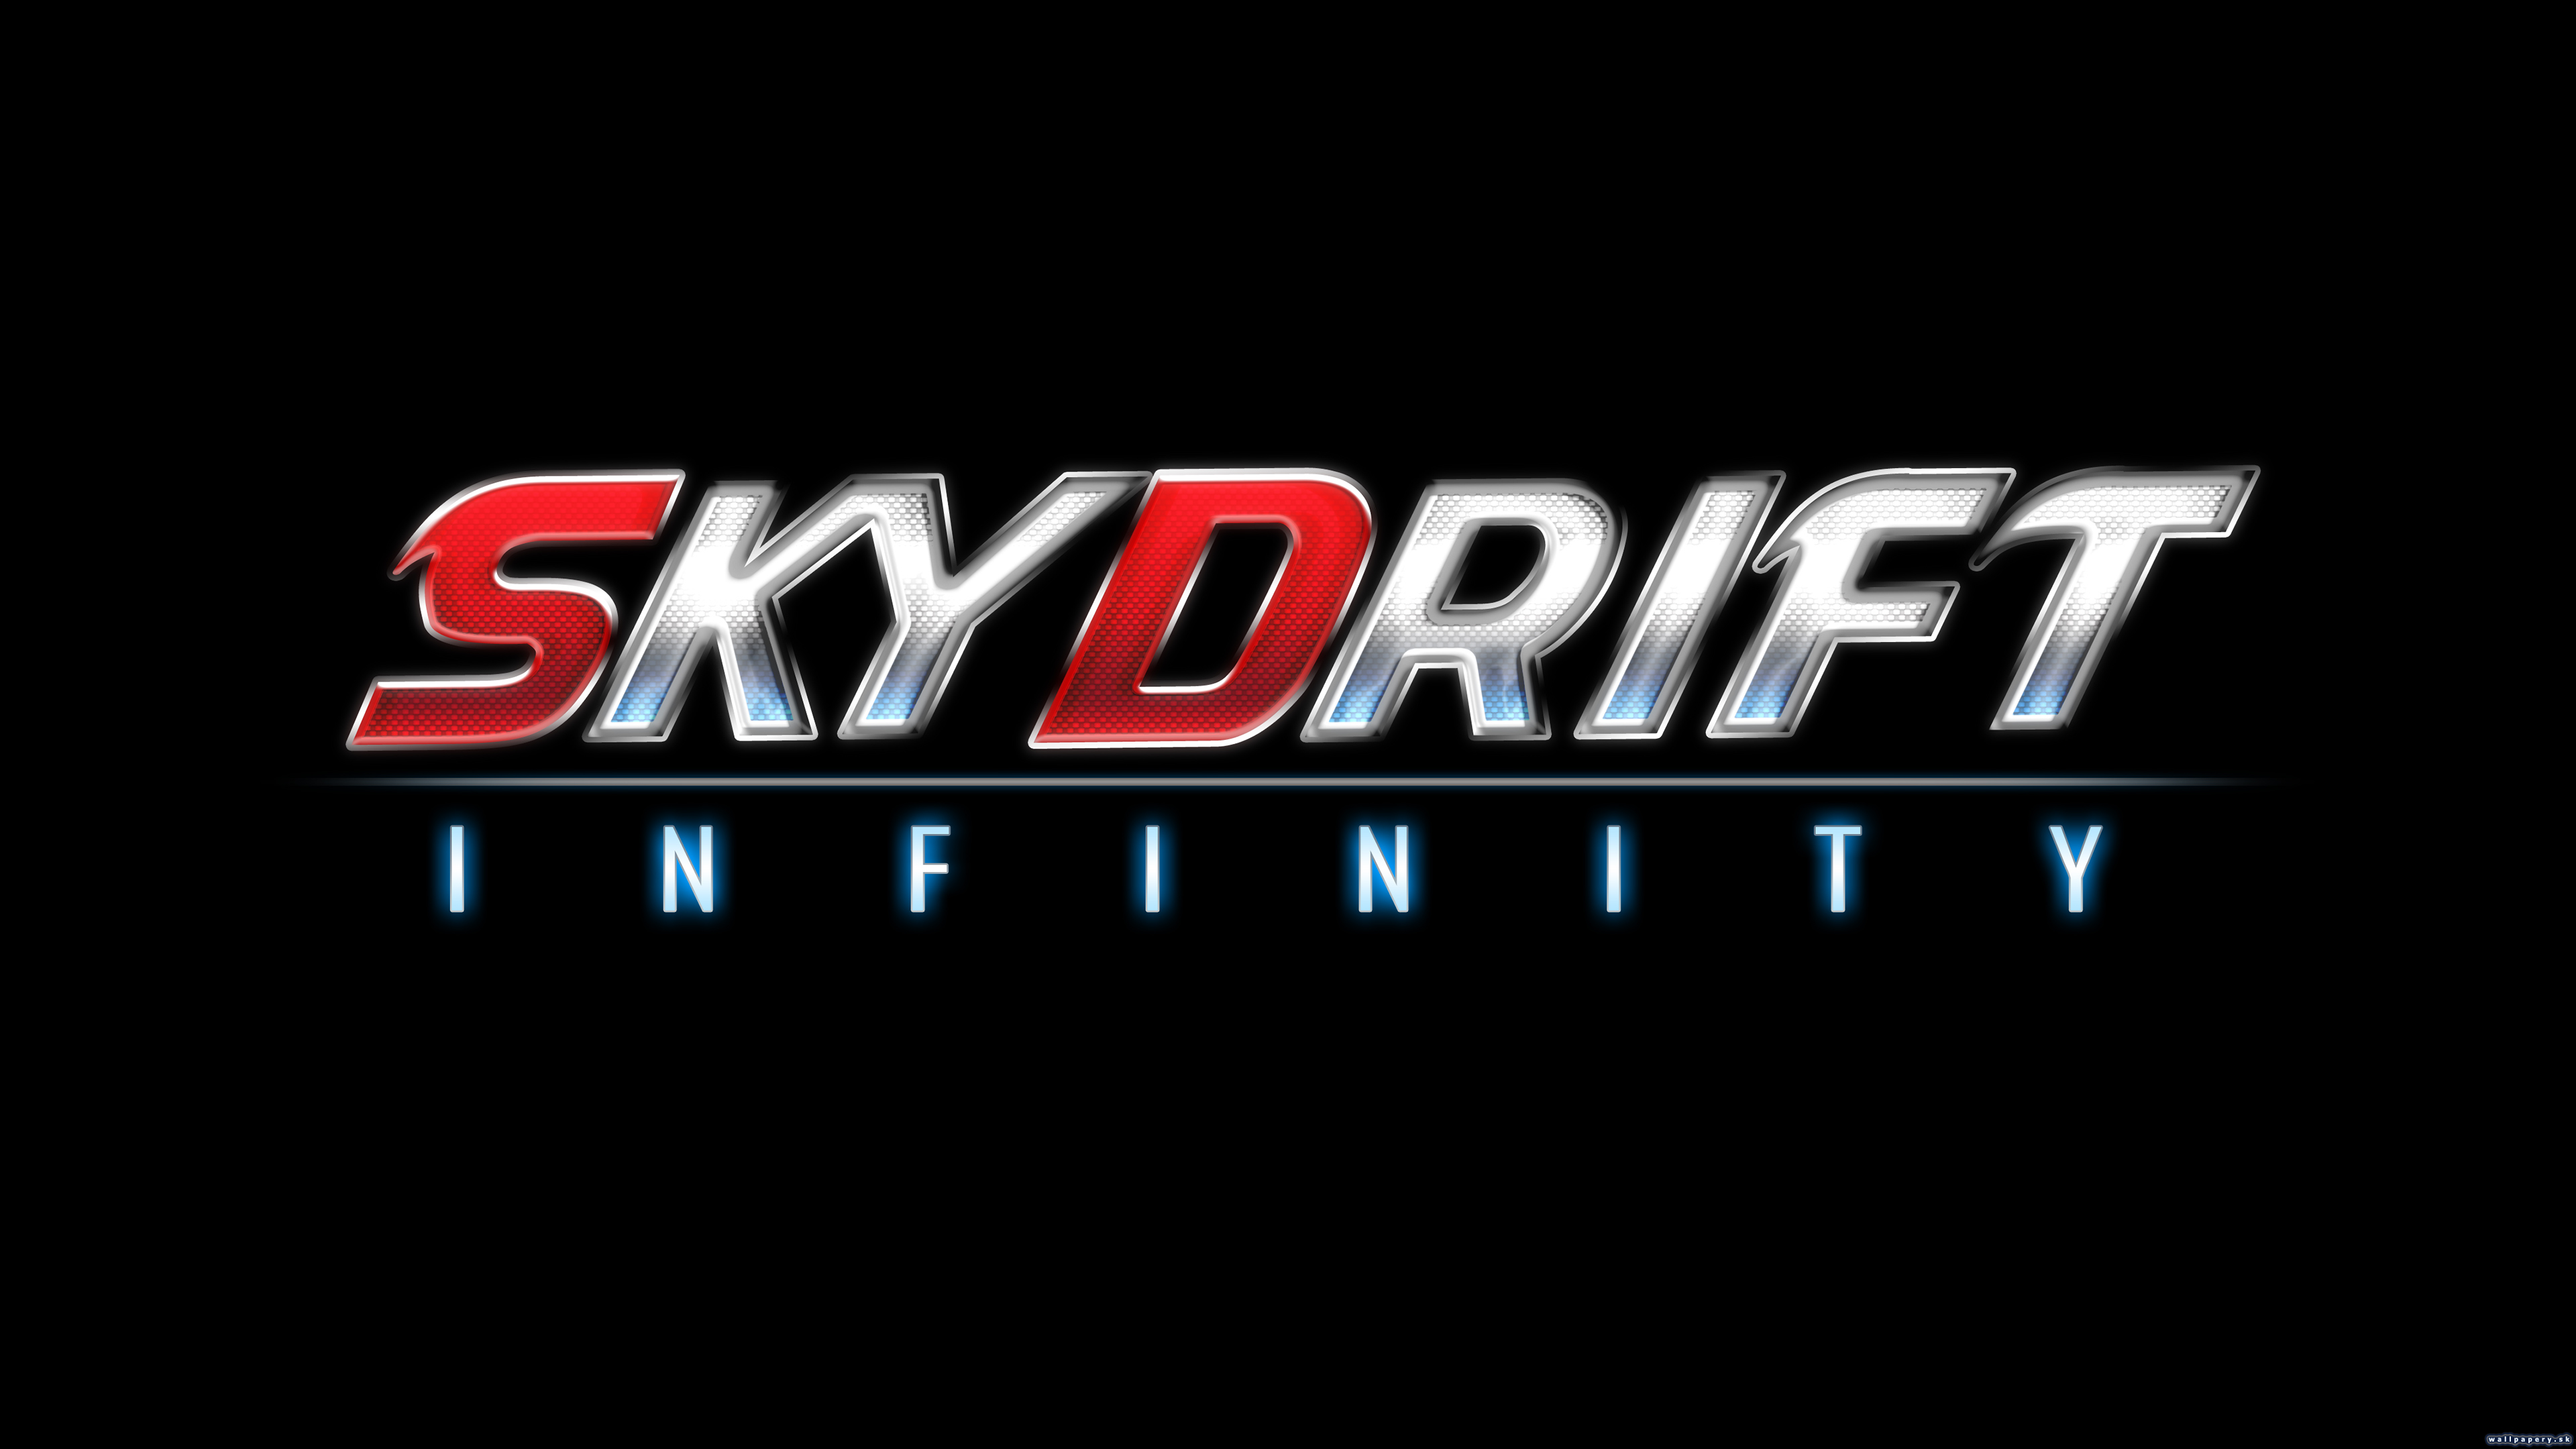 Skydrift Infinity - wallpaper 2